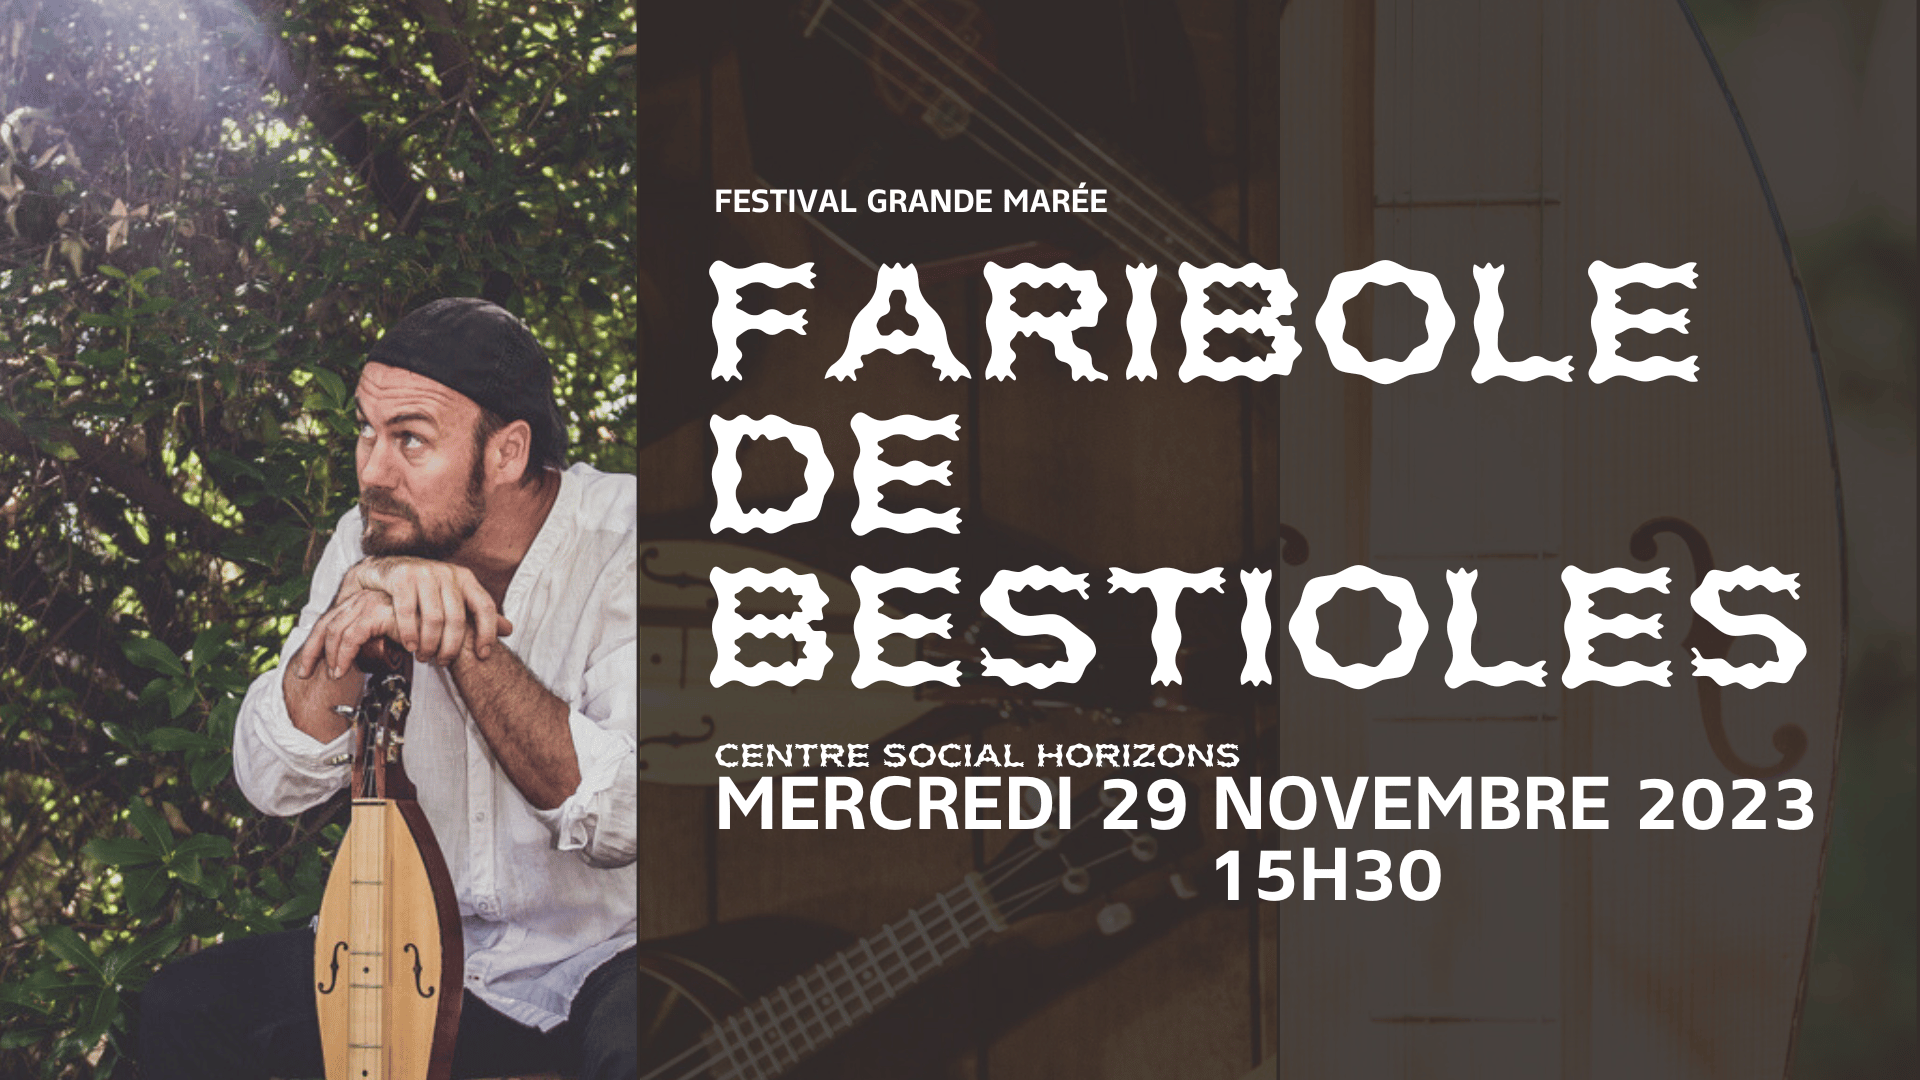 You are currently viewing Festival Grande Marée 2023 : le 29 novembre à Horizons